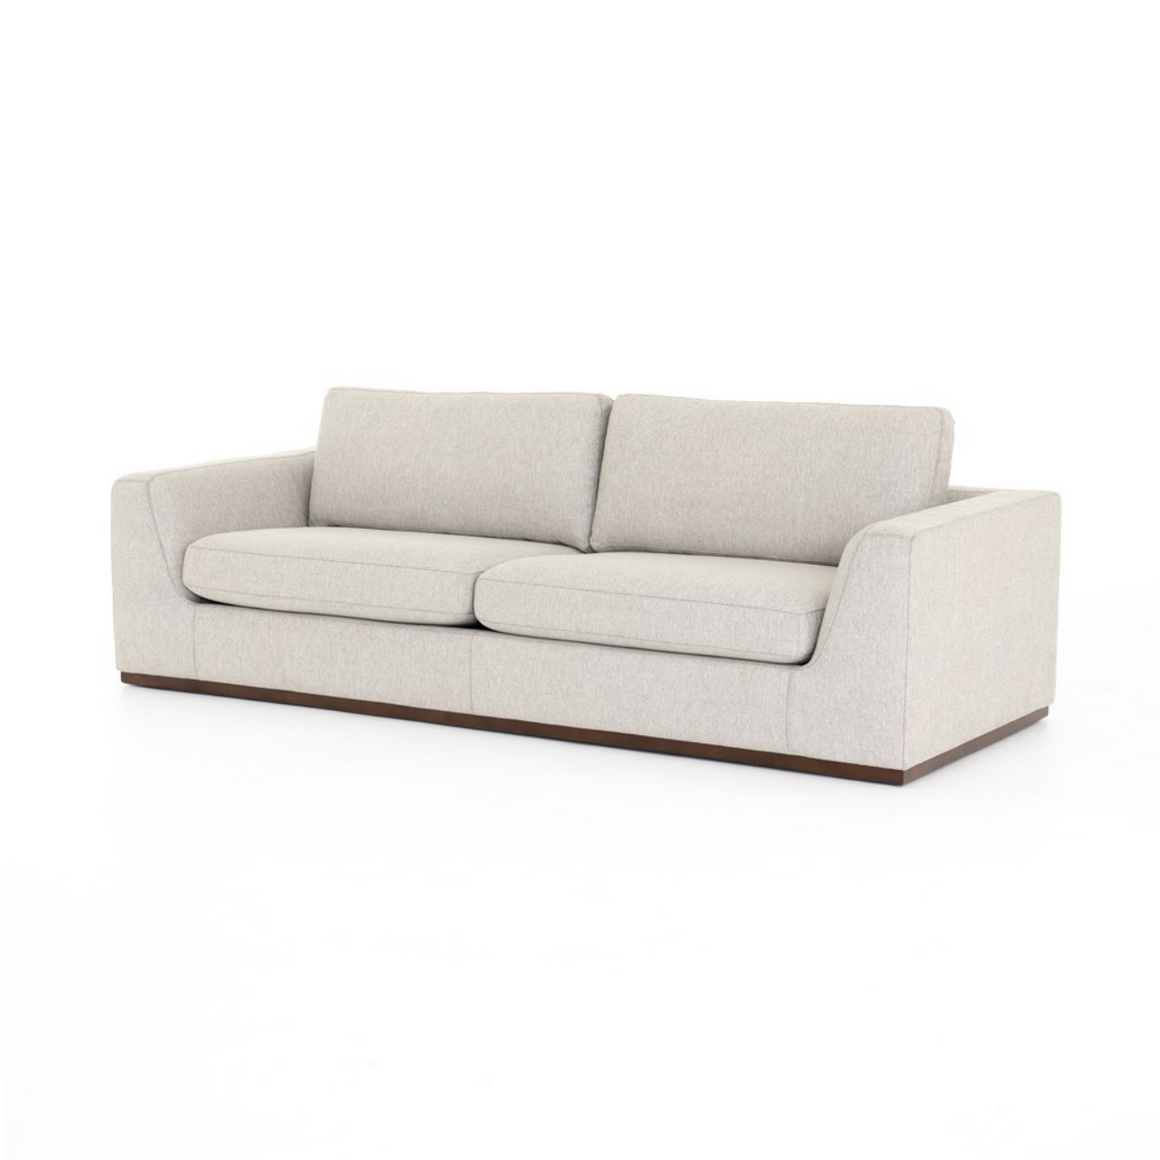 Colten 98" 2 Cushion Sofa - Silver